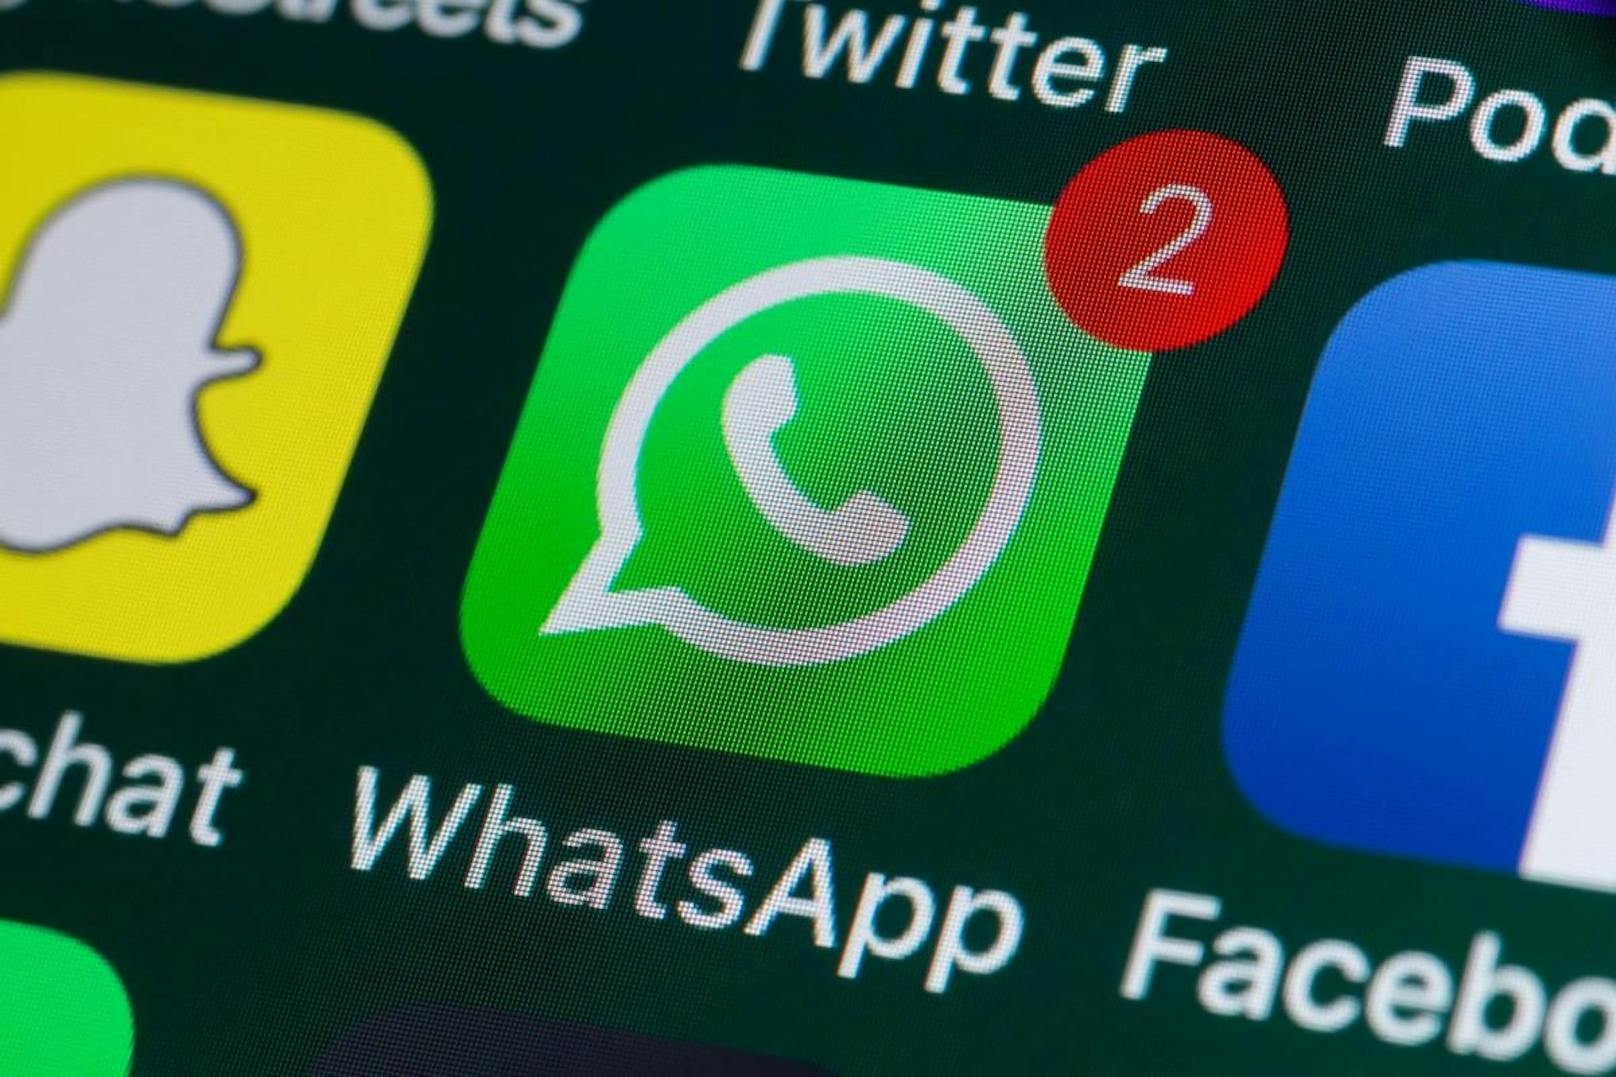 WhatsApp hat große Änderungen angekündigt, was die Messaging-App angeht.